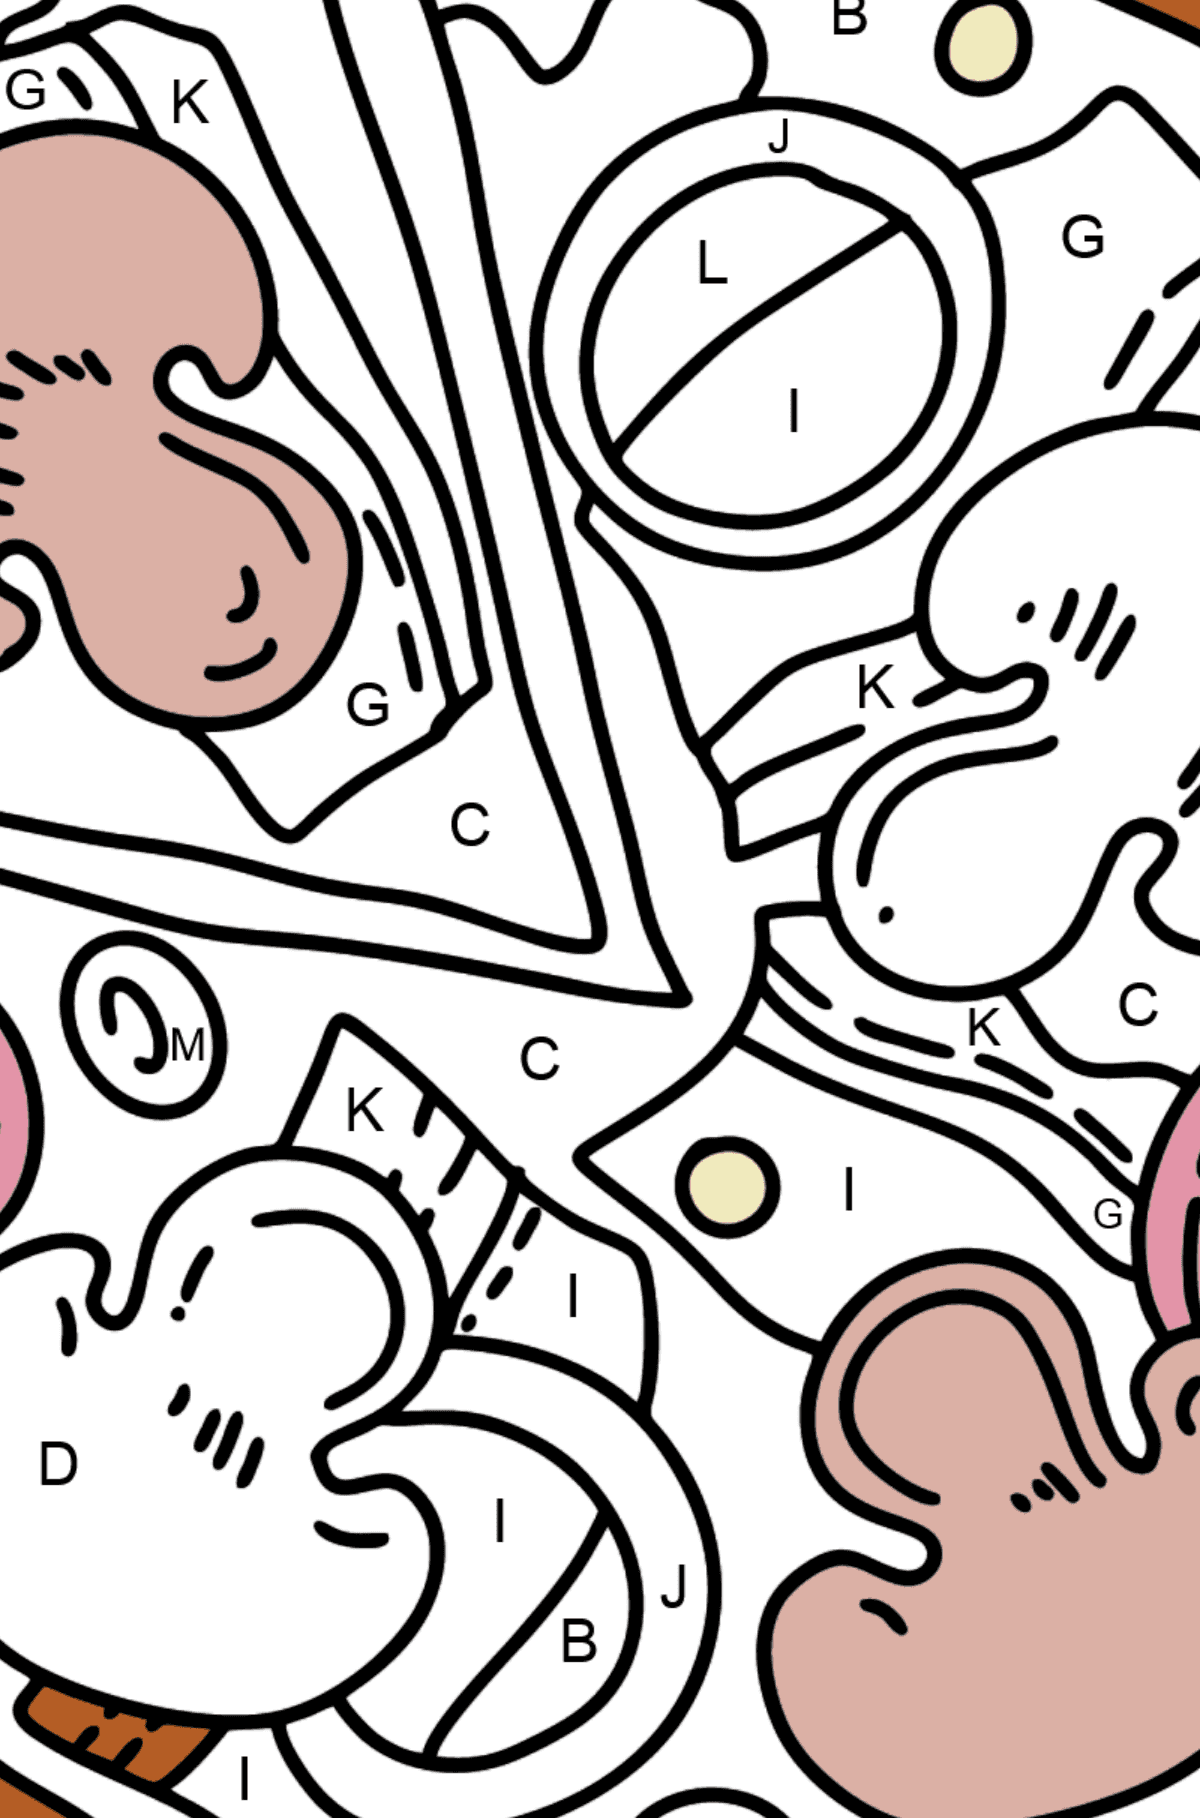 Desenho de uma pizza para colorir - Colorir por Letras para Crianças